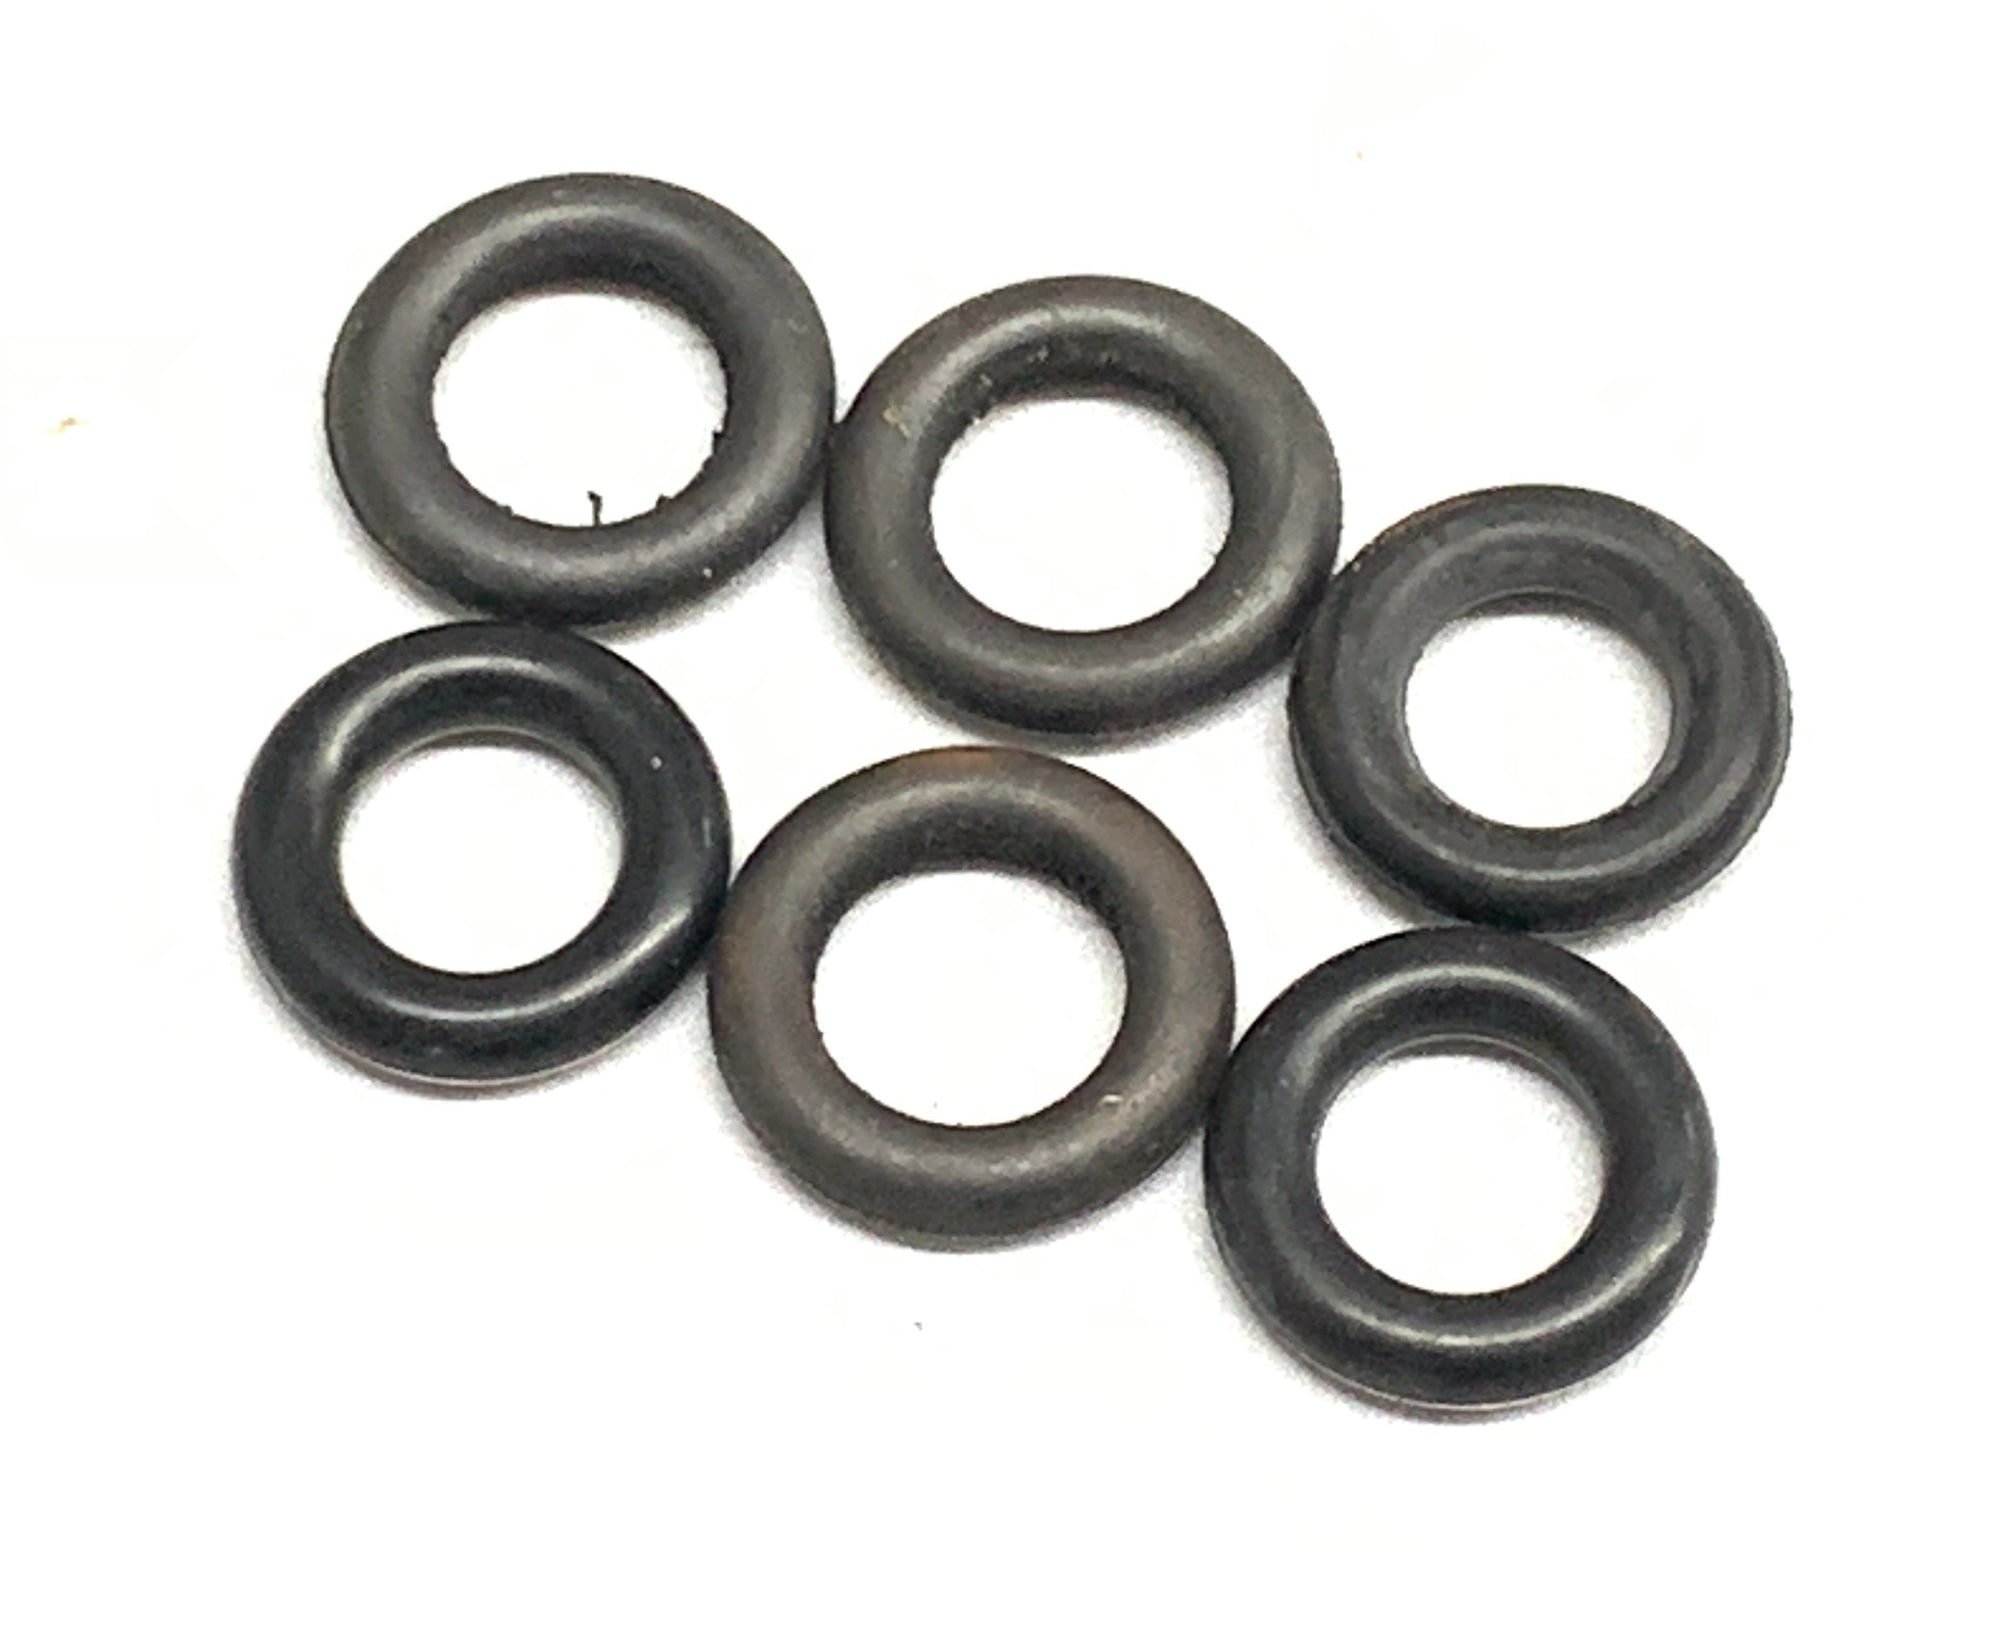 Case Stud Sealing O-rings - Set of 6